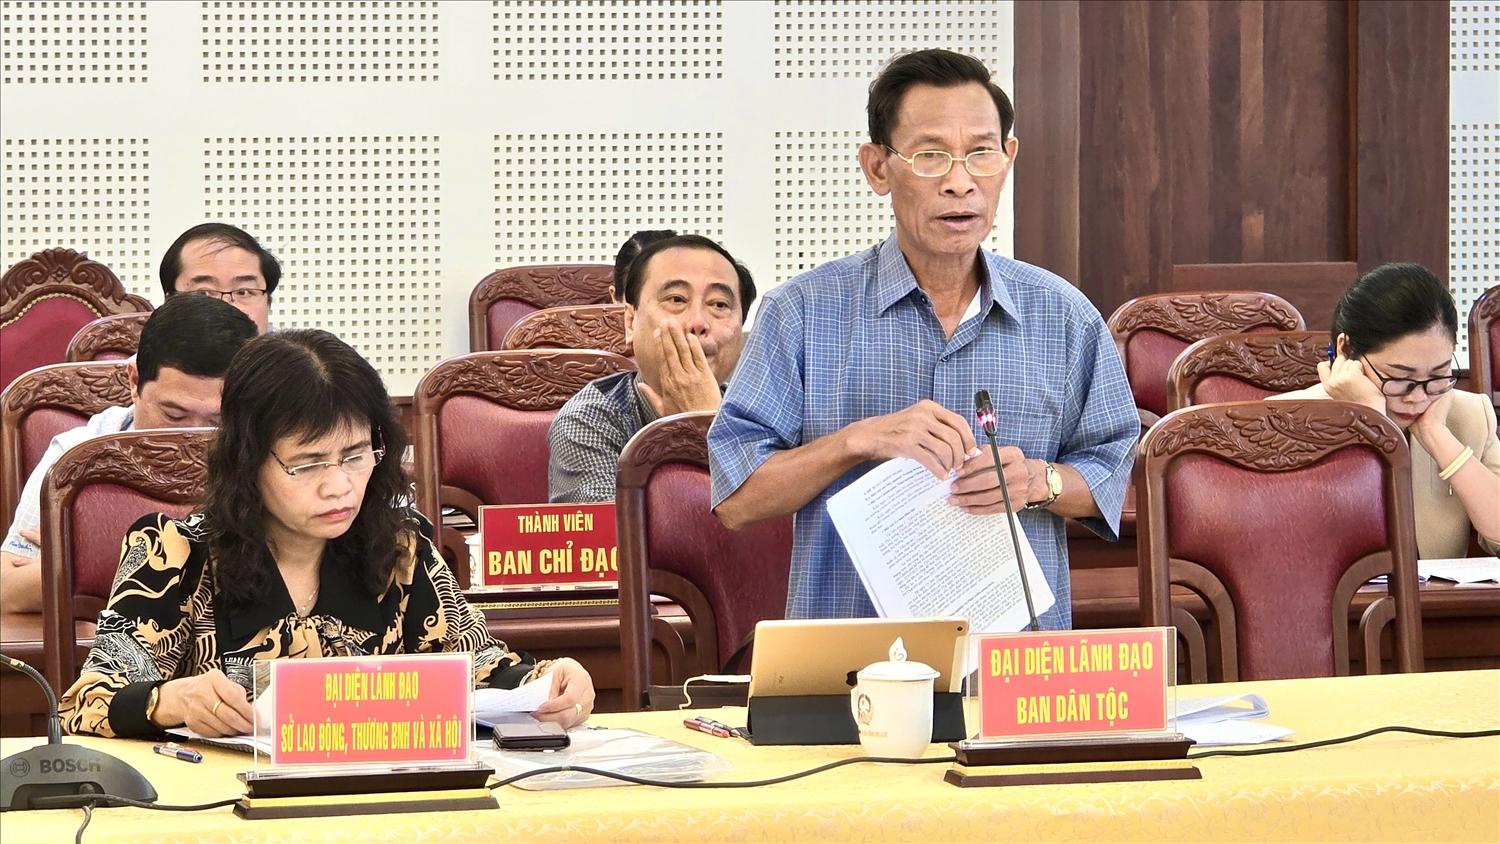 Trưởng Ban Dân tộc tỉnh Gia Lai Kpă Đô báo cáo về kết quả triển khai chương trình MTQG phát triển kinh tế - xã hội vùng đồng bào DTTS và miền núi 